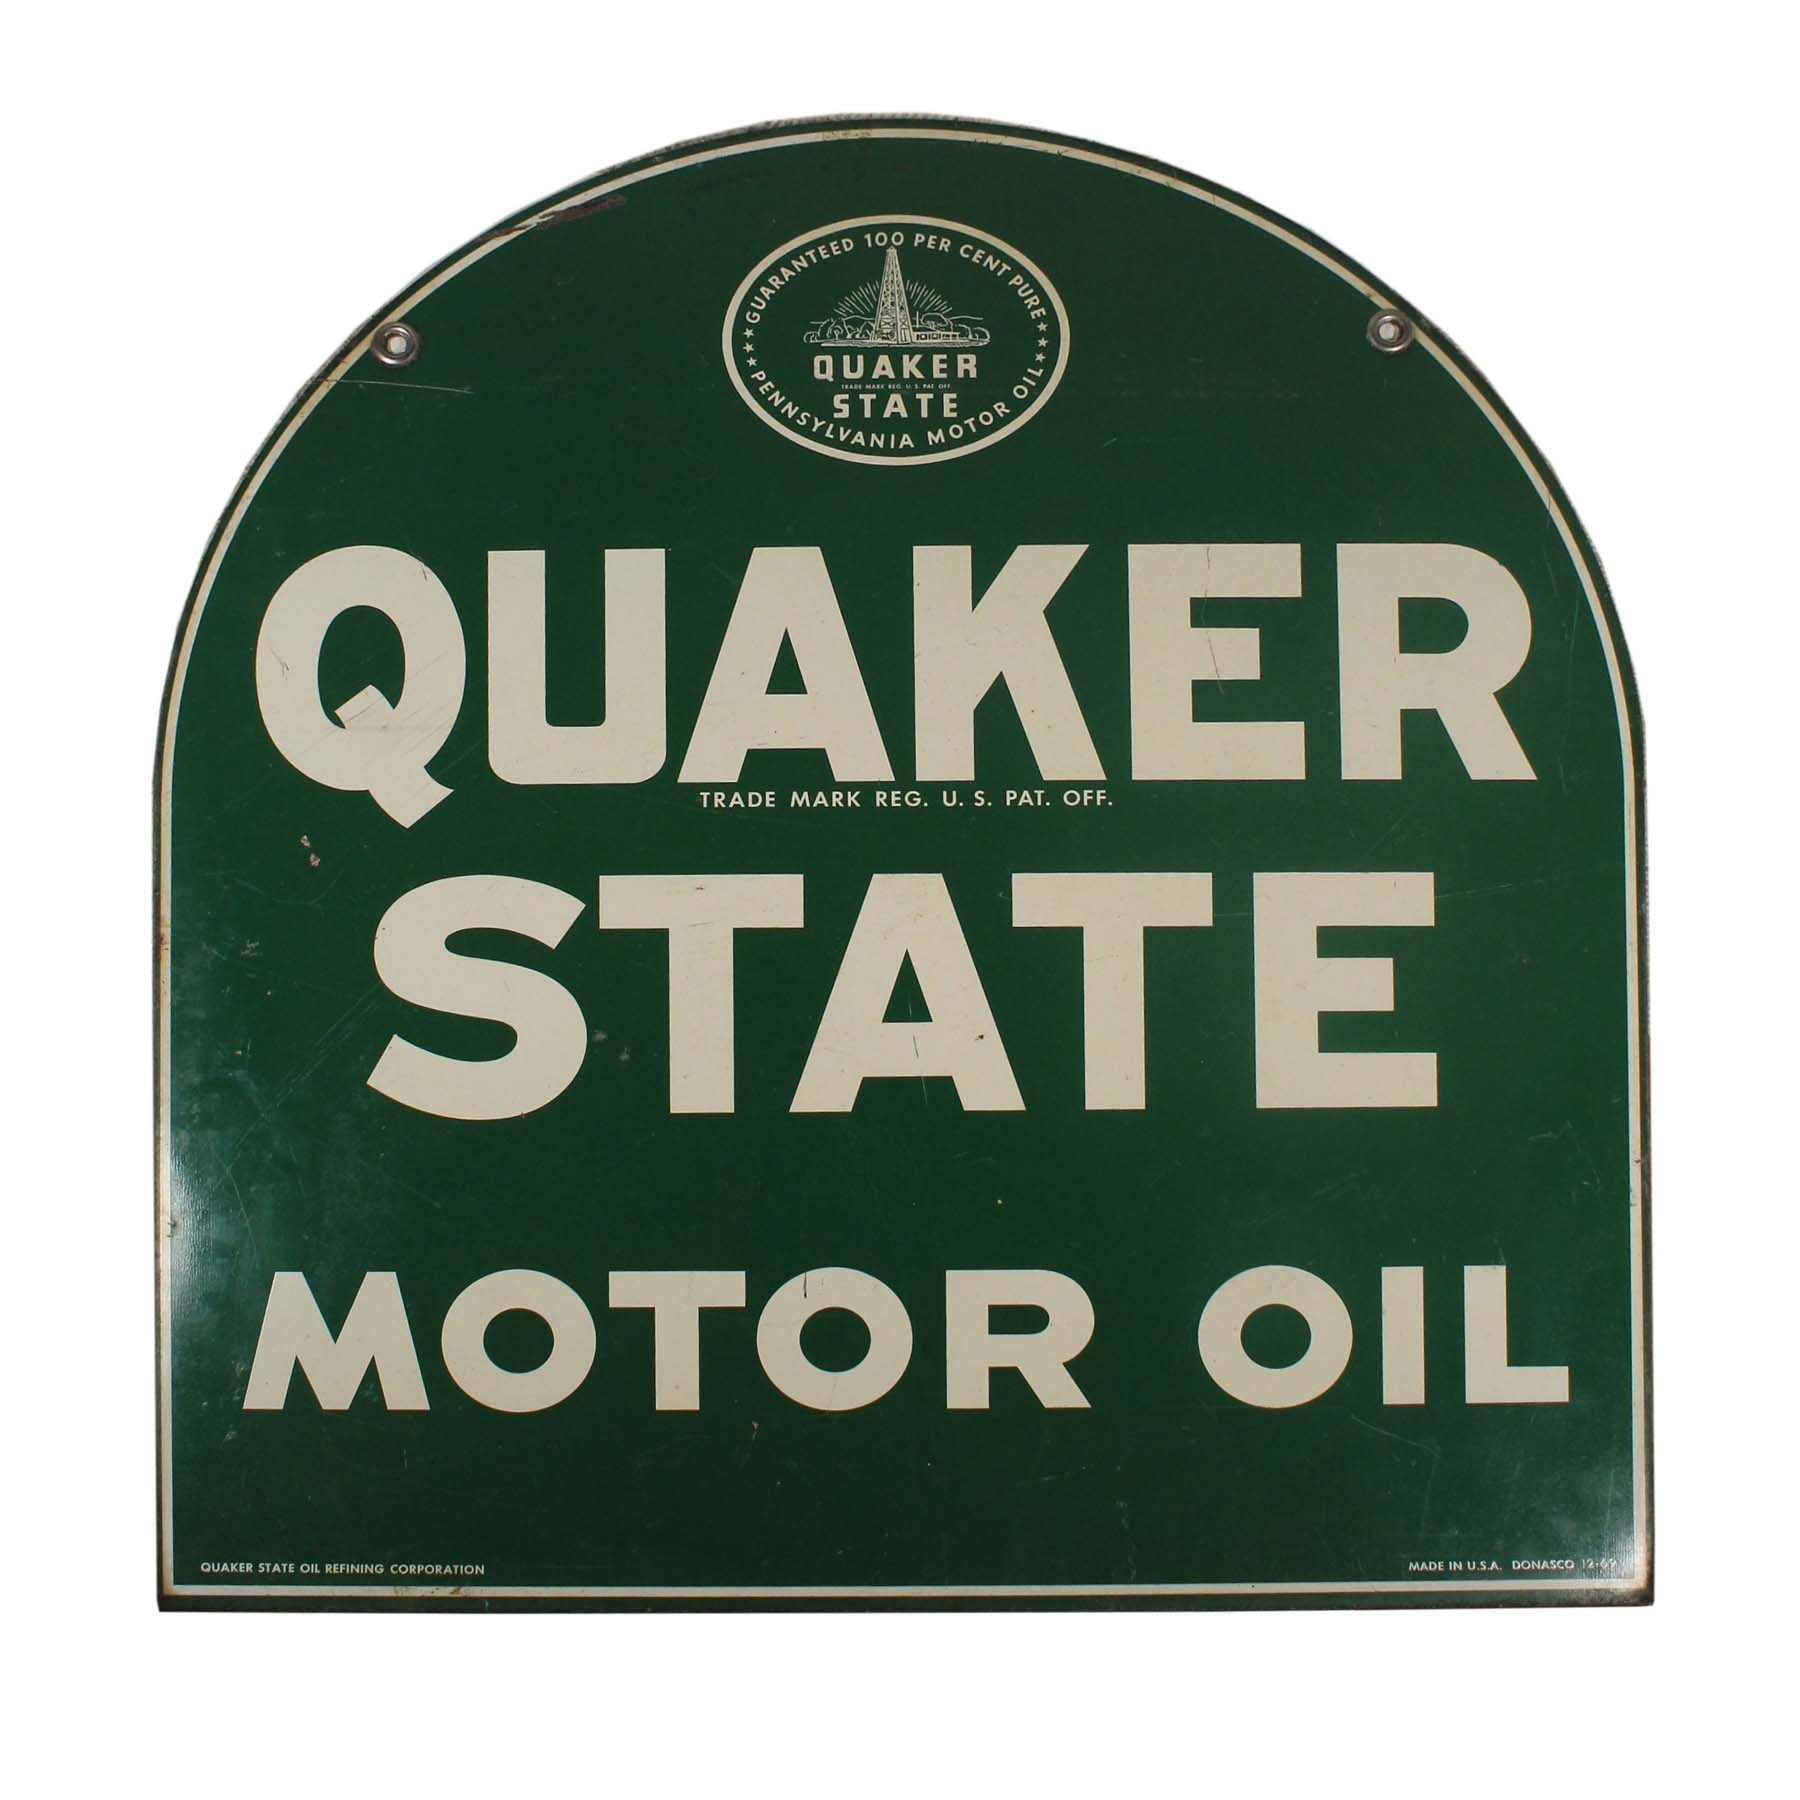 SOLD Vintage Quaker State Motor Oil Sign, c. 1967-0